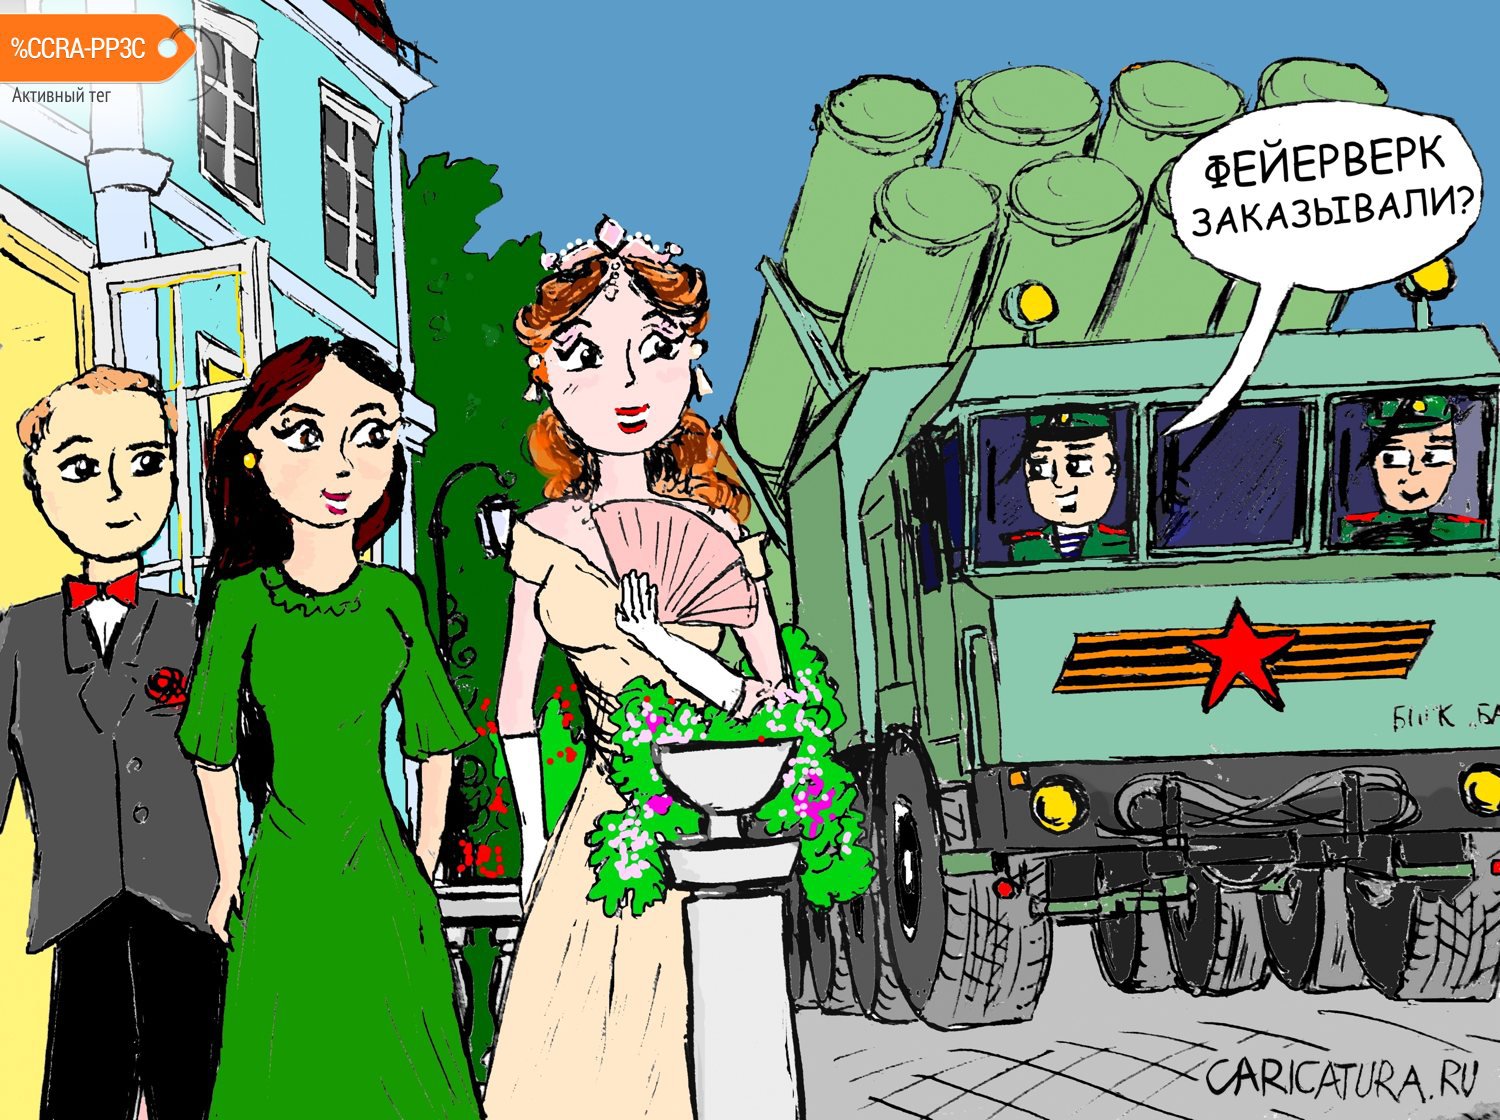 Карикатура "Бал", Евгений Игумнов